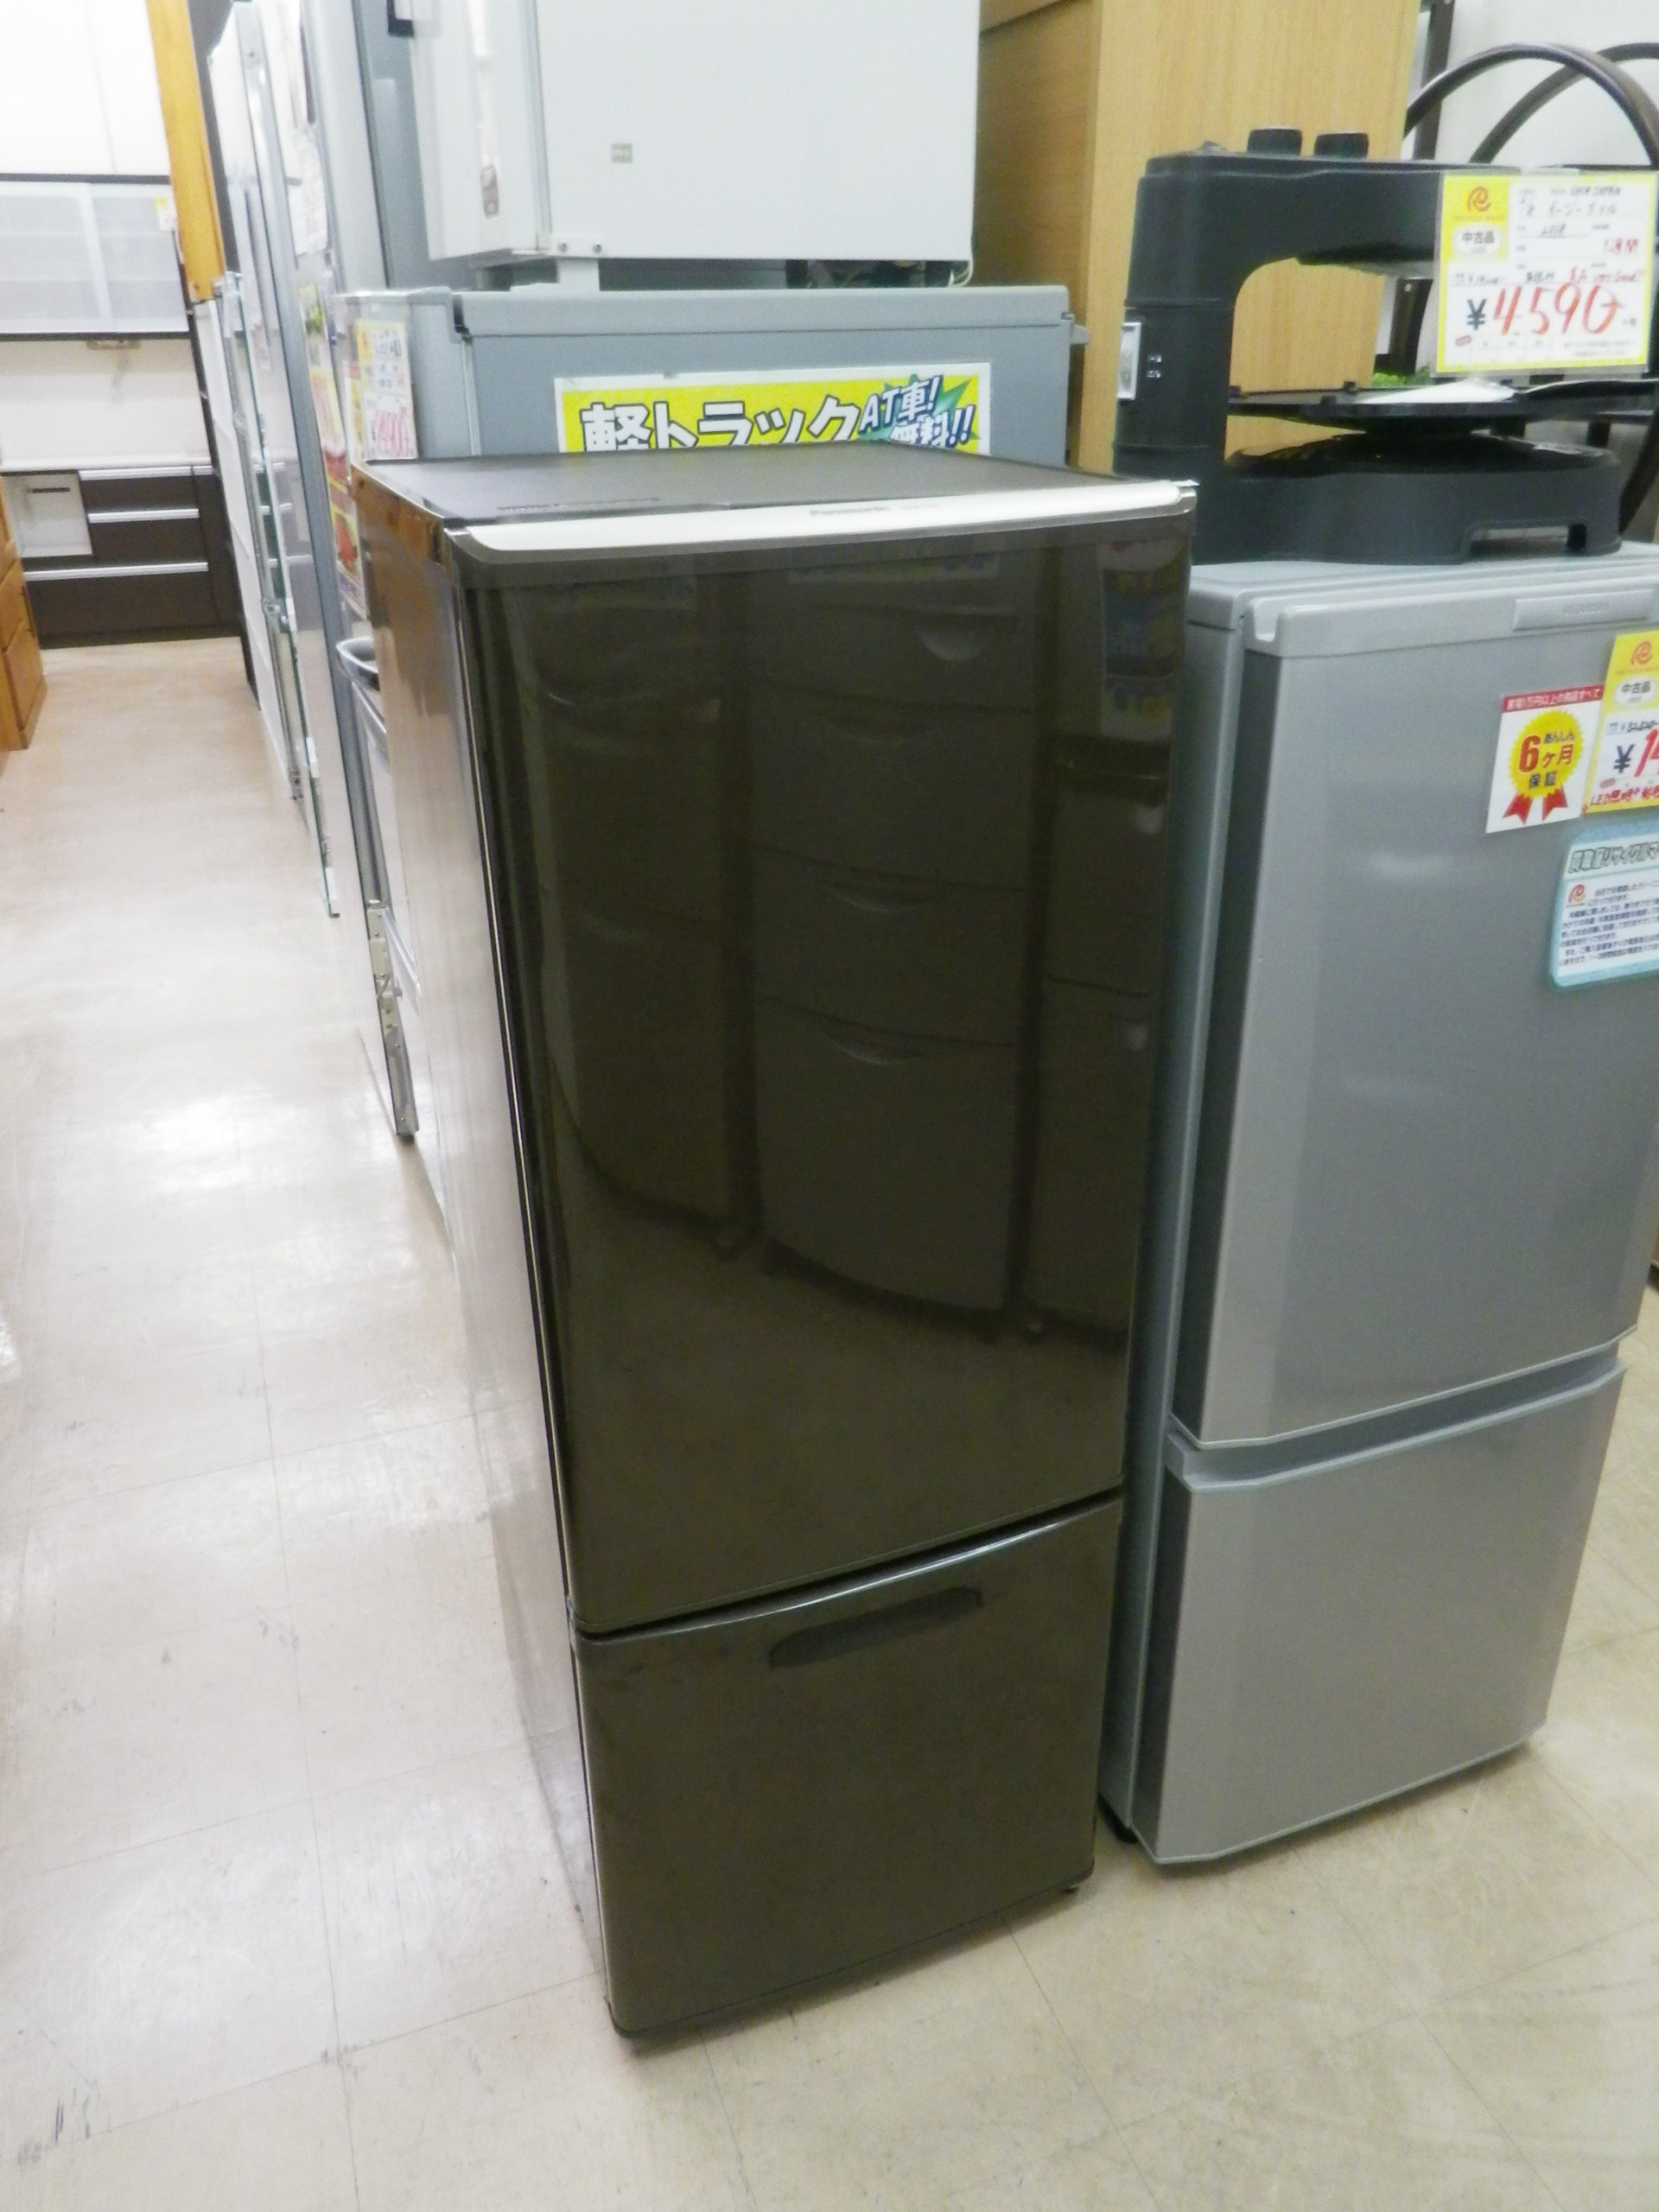 【Panasonic パナソニック 168L 冷蔵庫 NR-B174W 単身用】を買取させて頂きました！ - リサイクルマートは現在冷蔵庫の買取、家具の買取強化中です！お気軽にお問い合わせください。